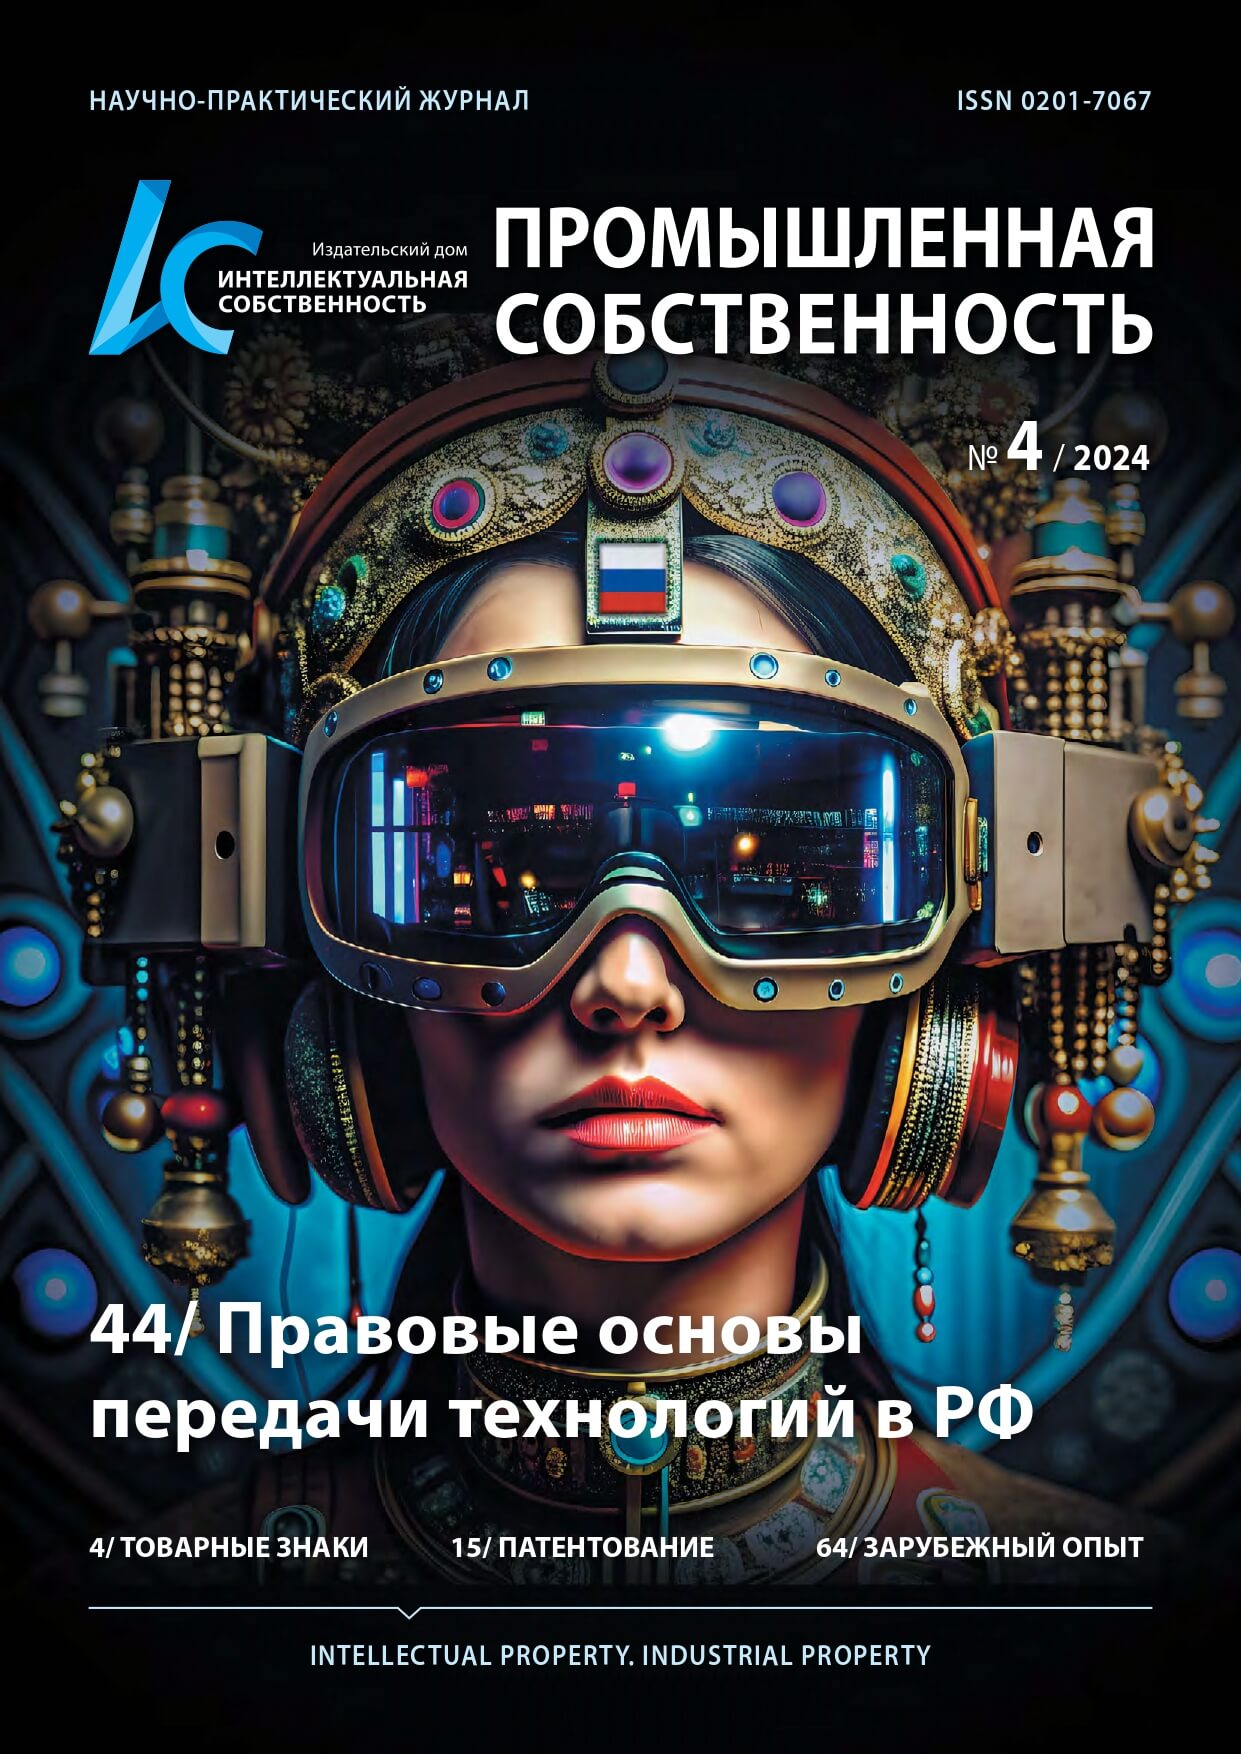 44/ Правовые основы передачи технологий в РФ